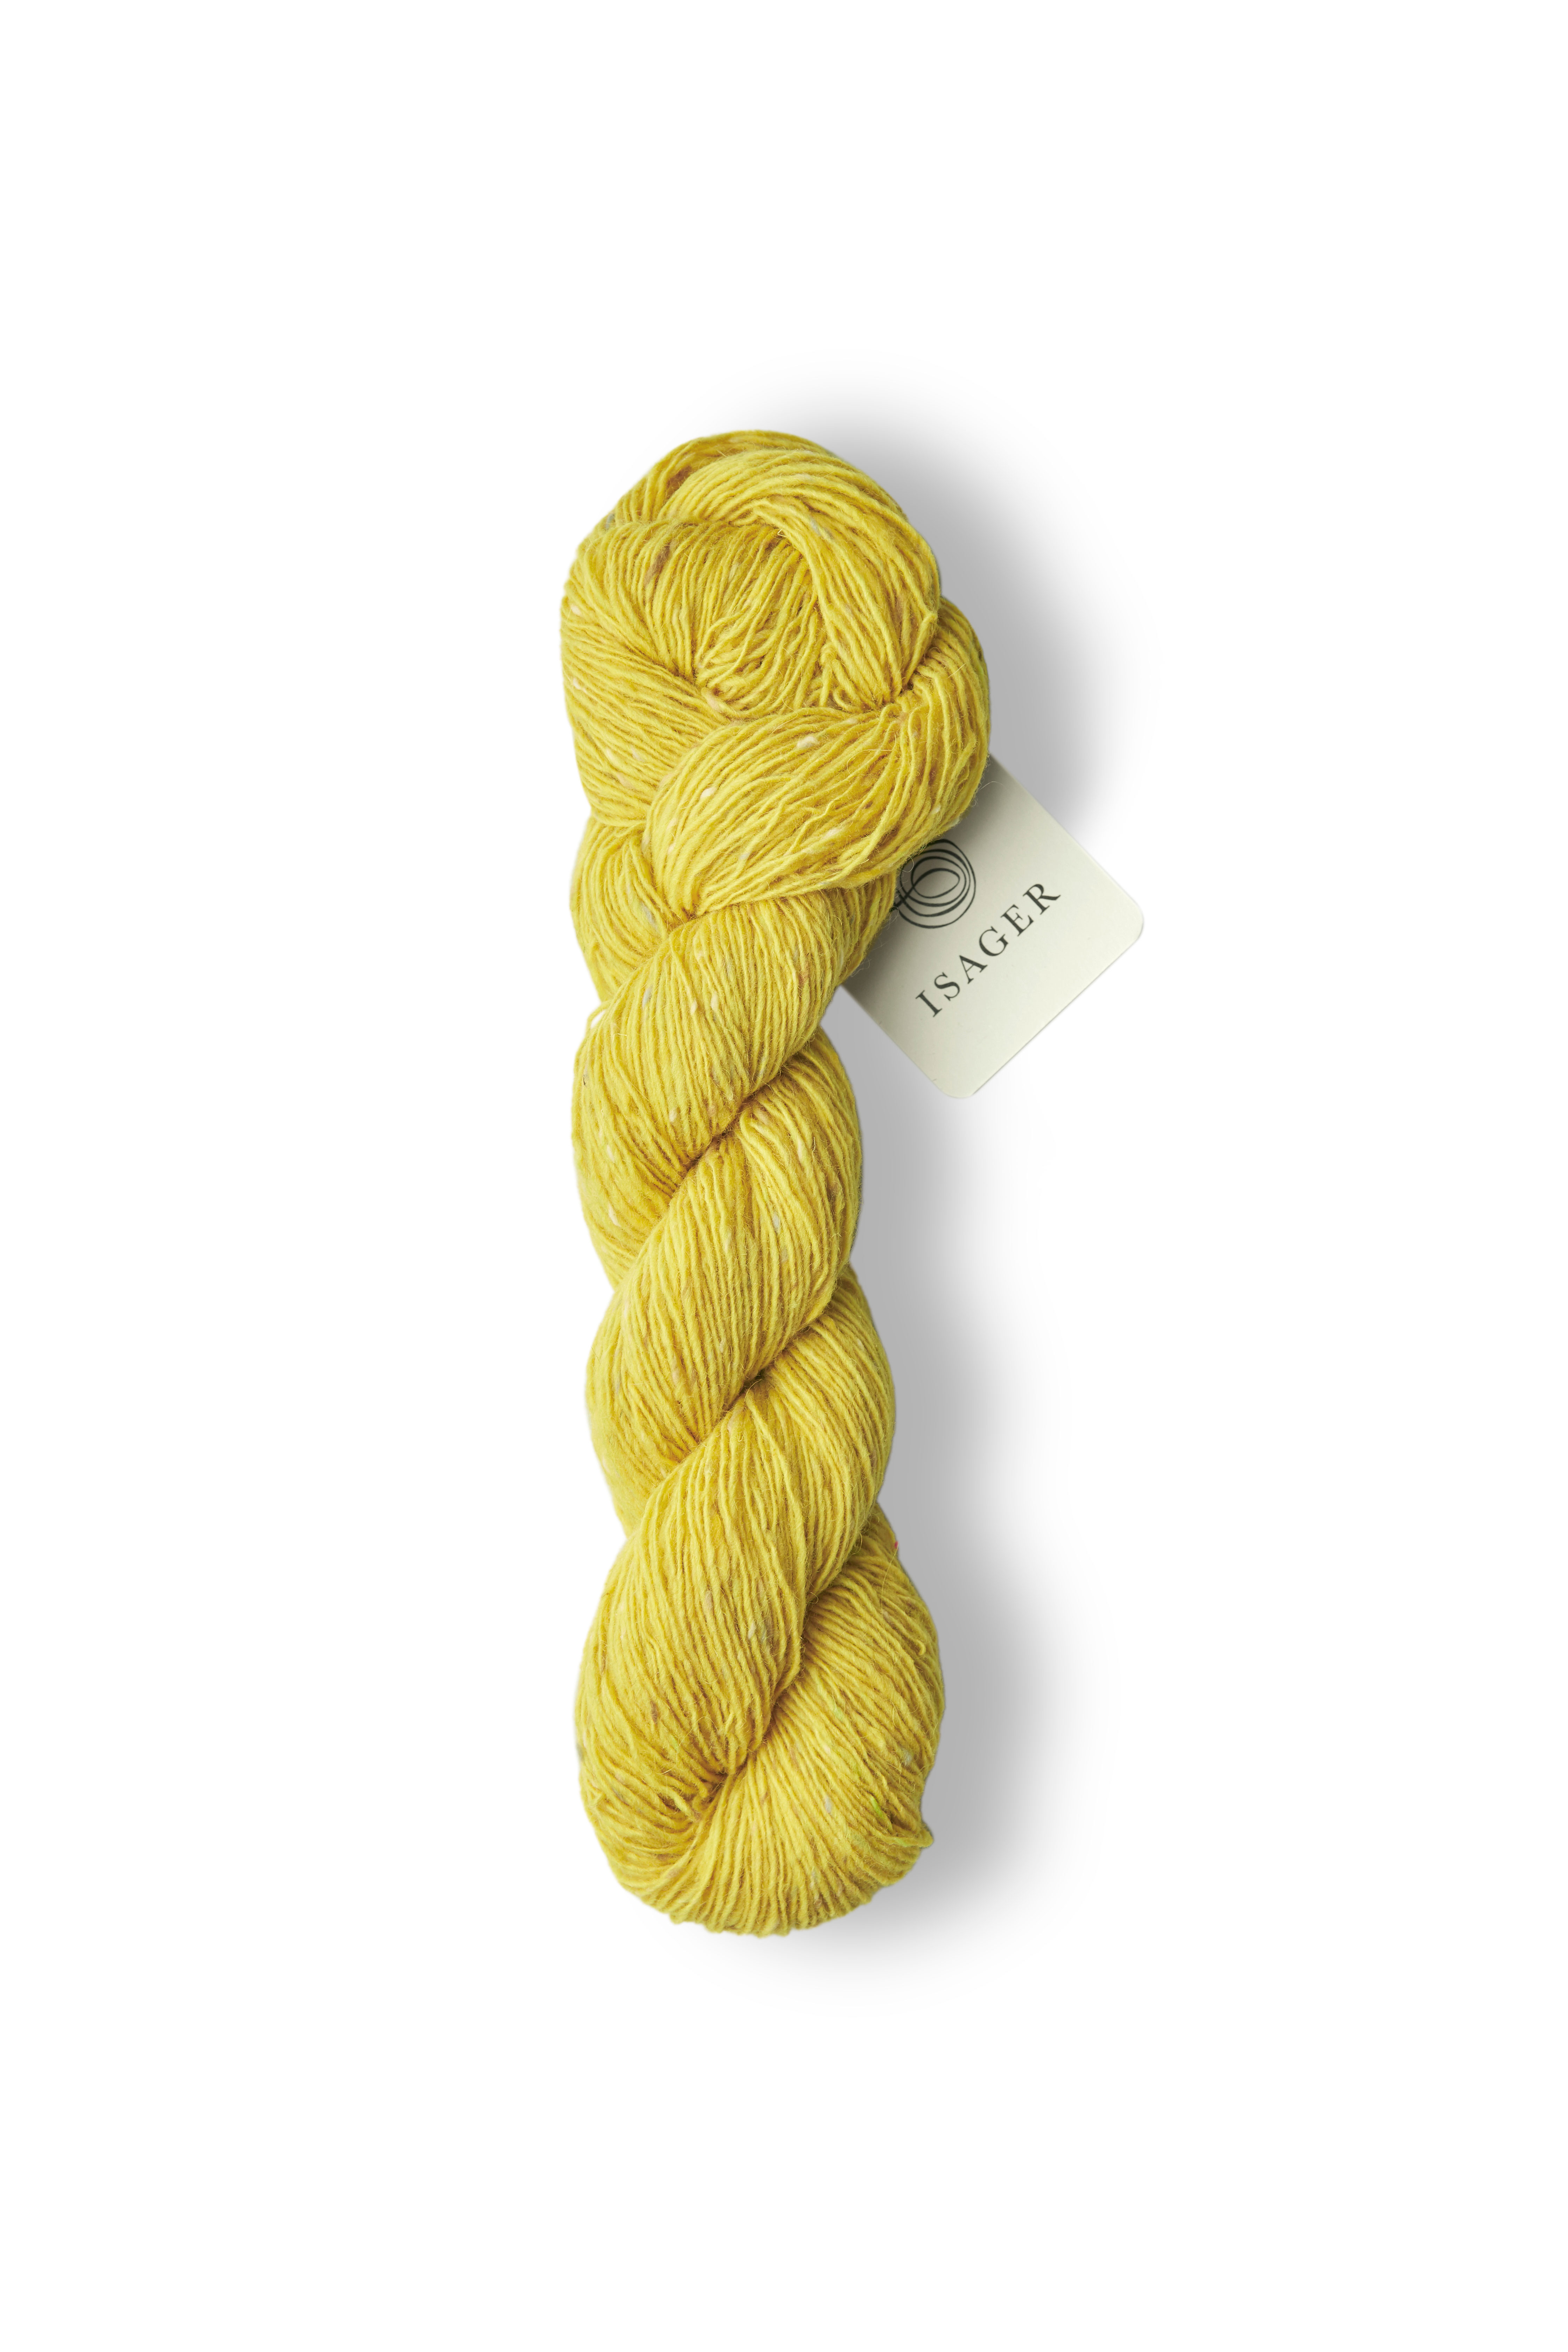 Tweed - Lemon